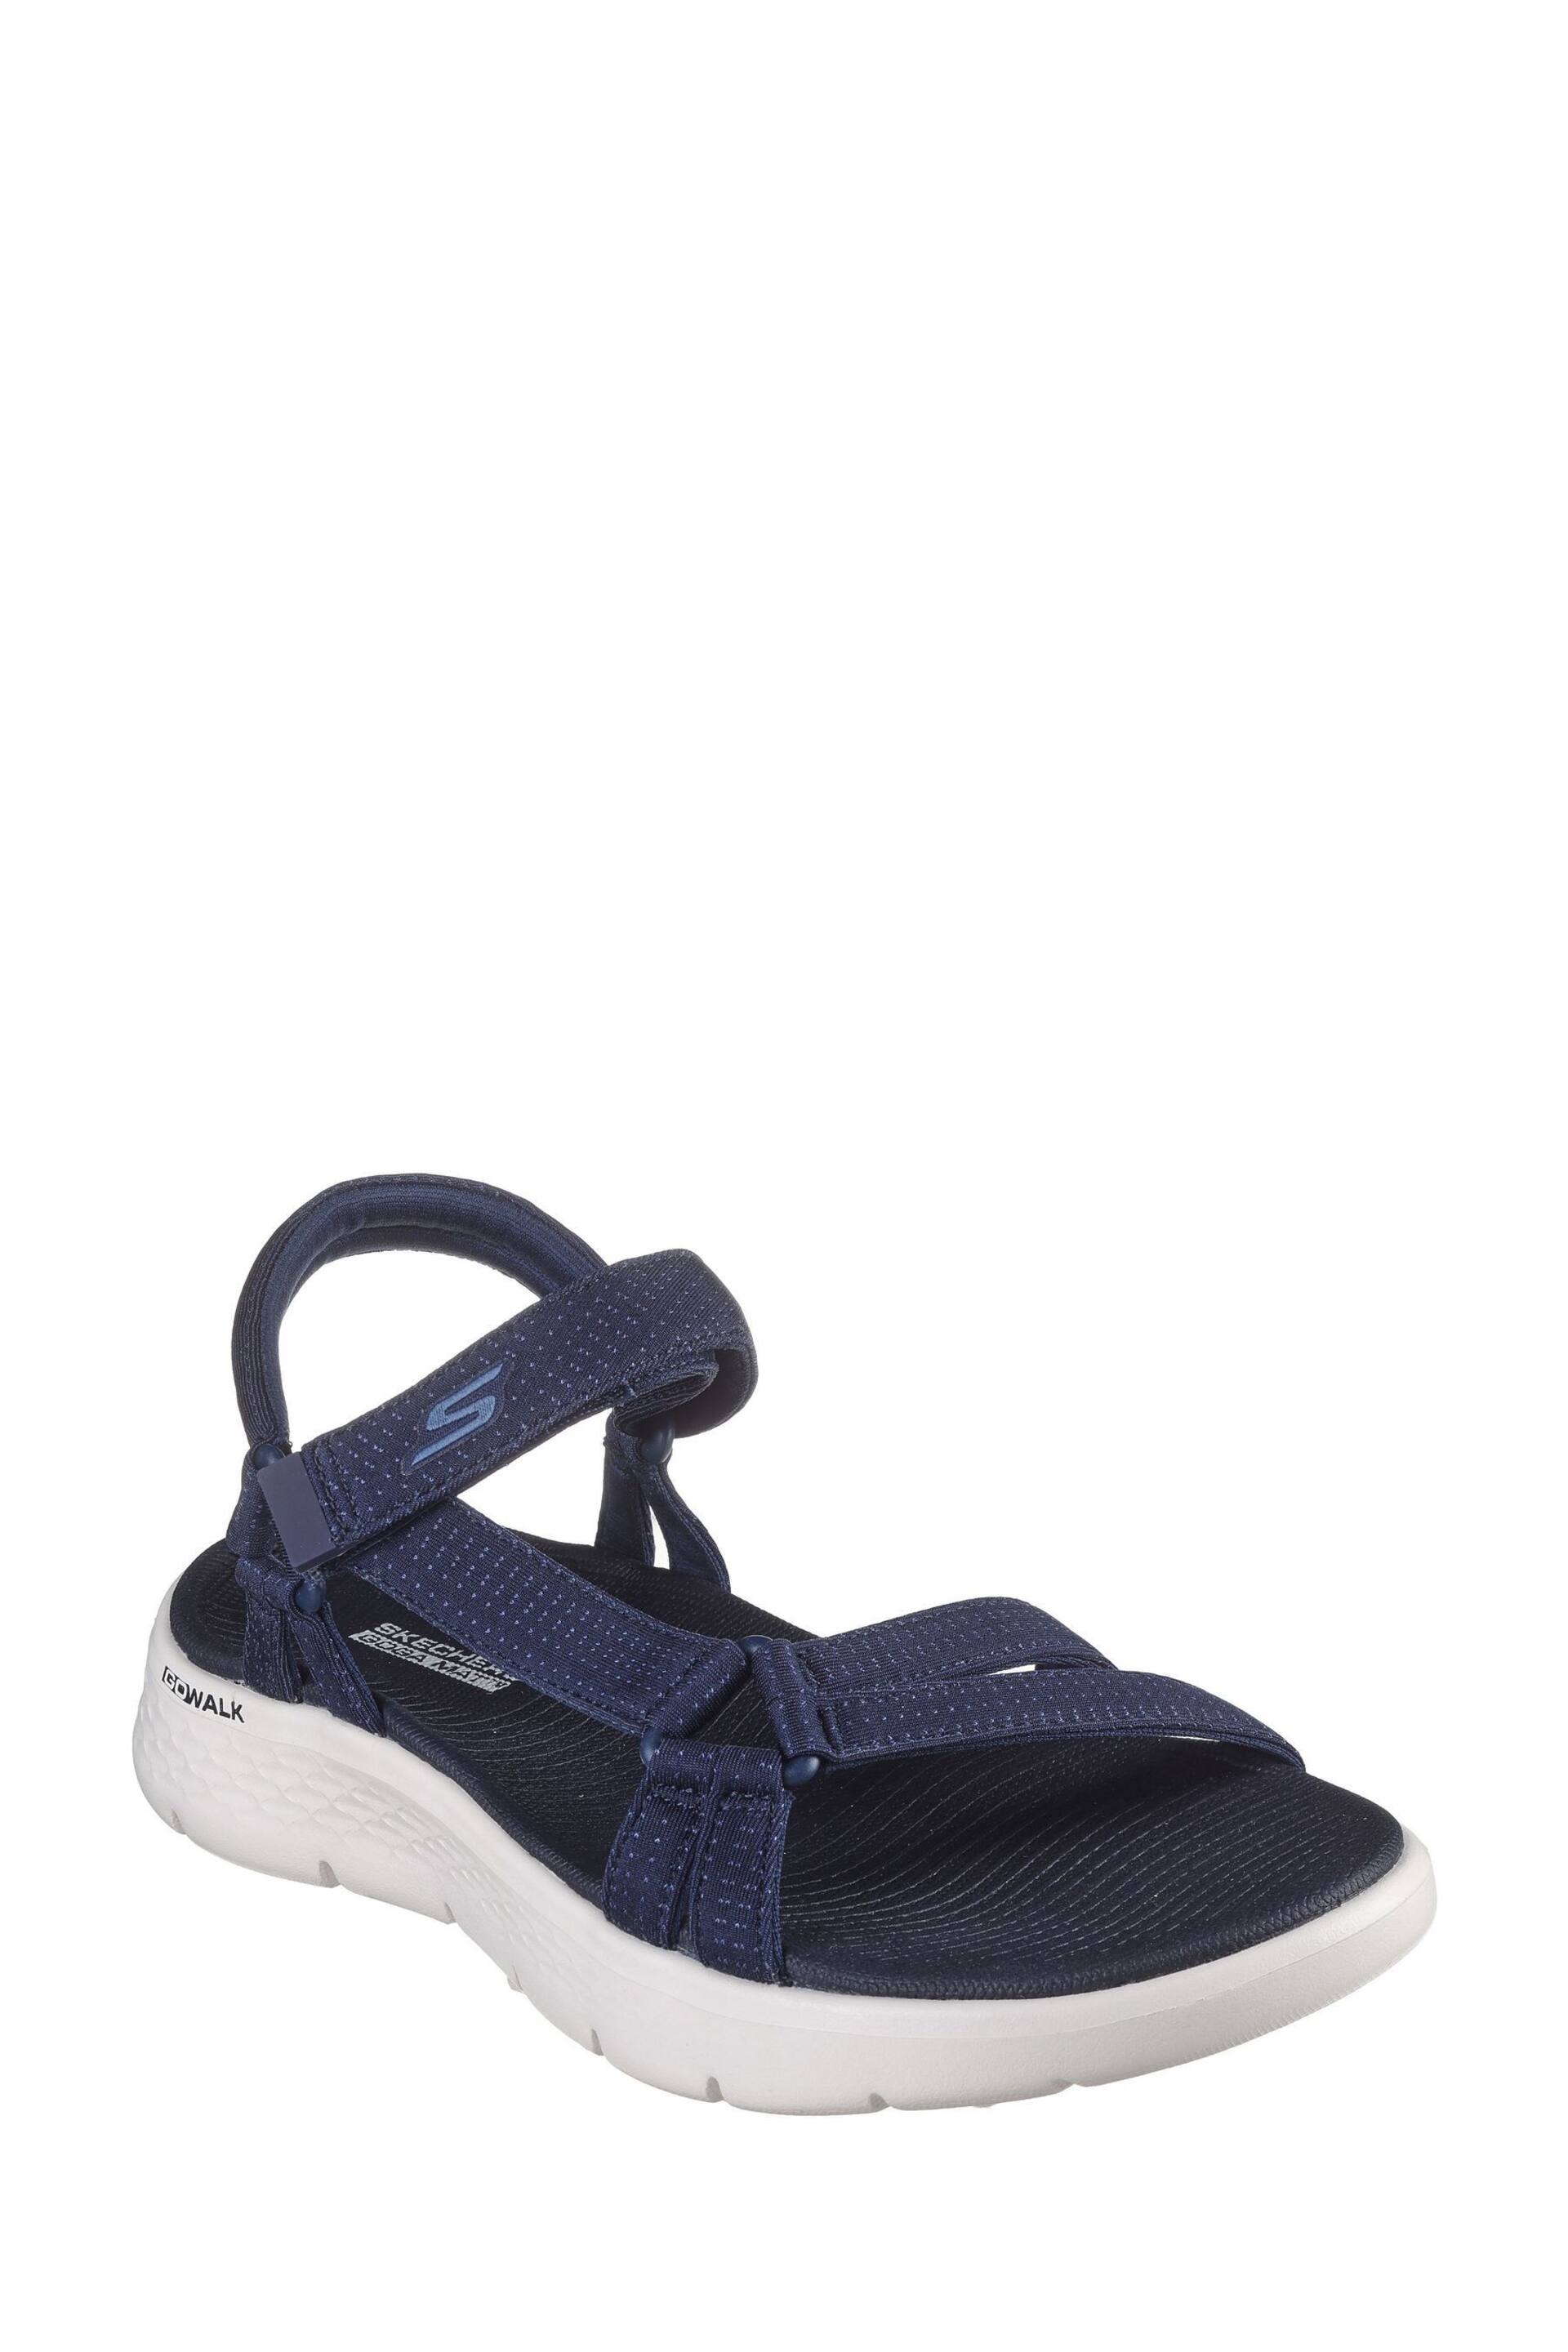 Skechers Blue Go Walk Flex Sublime-X Sandals - Image 3 of 5